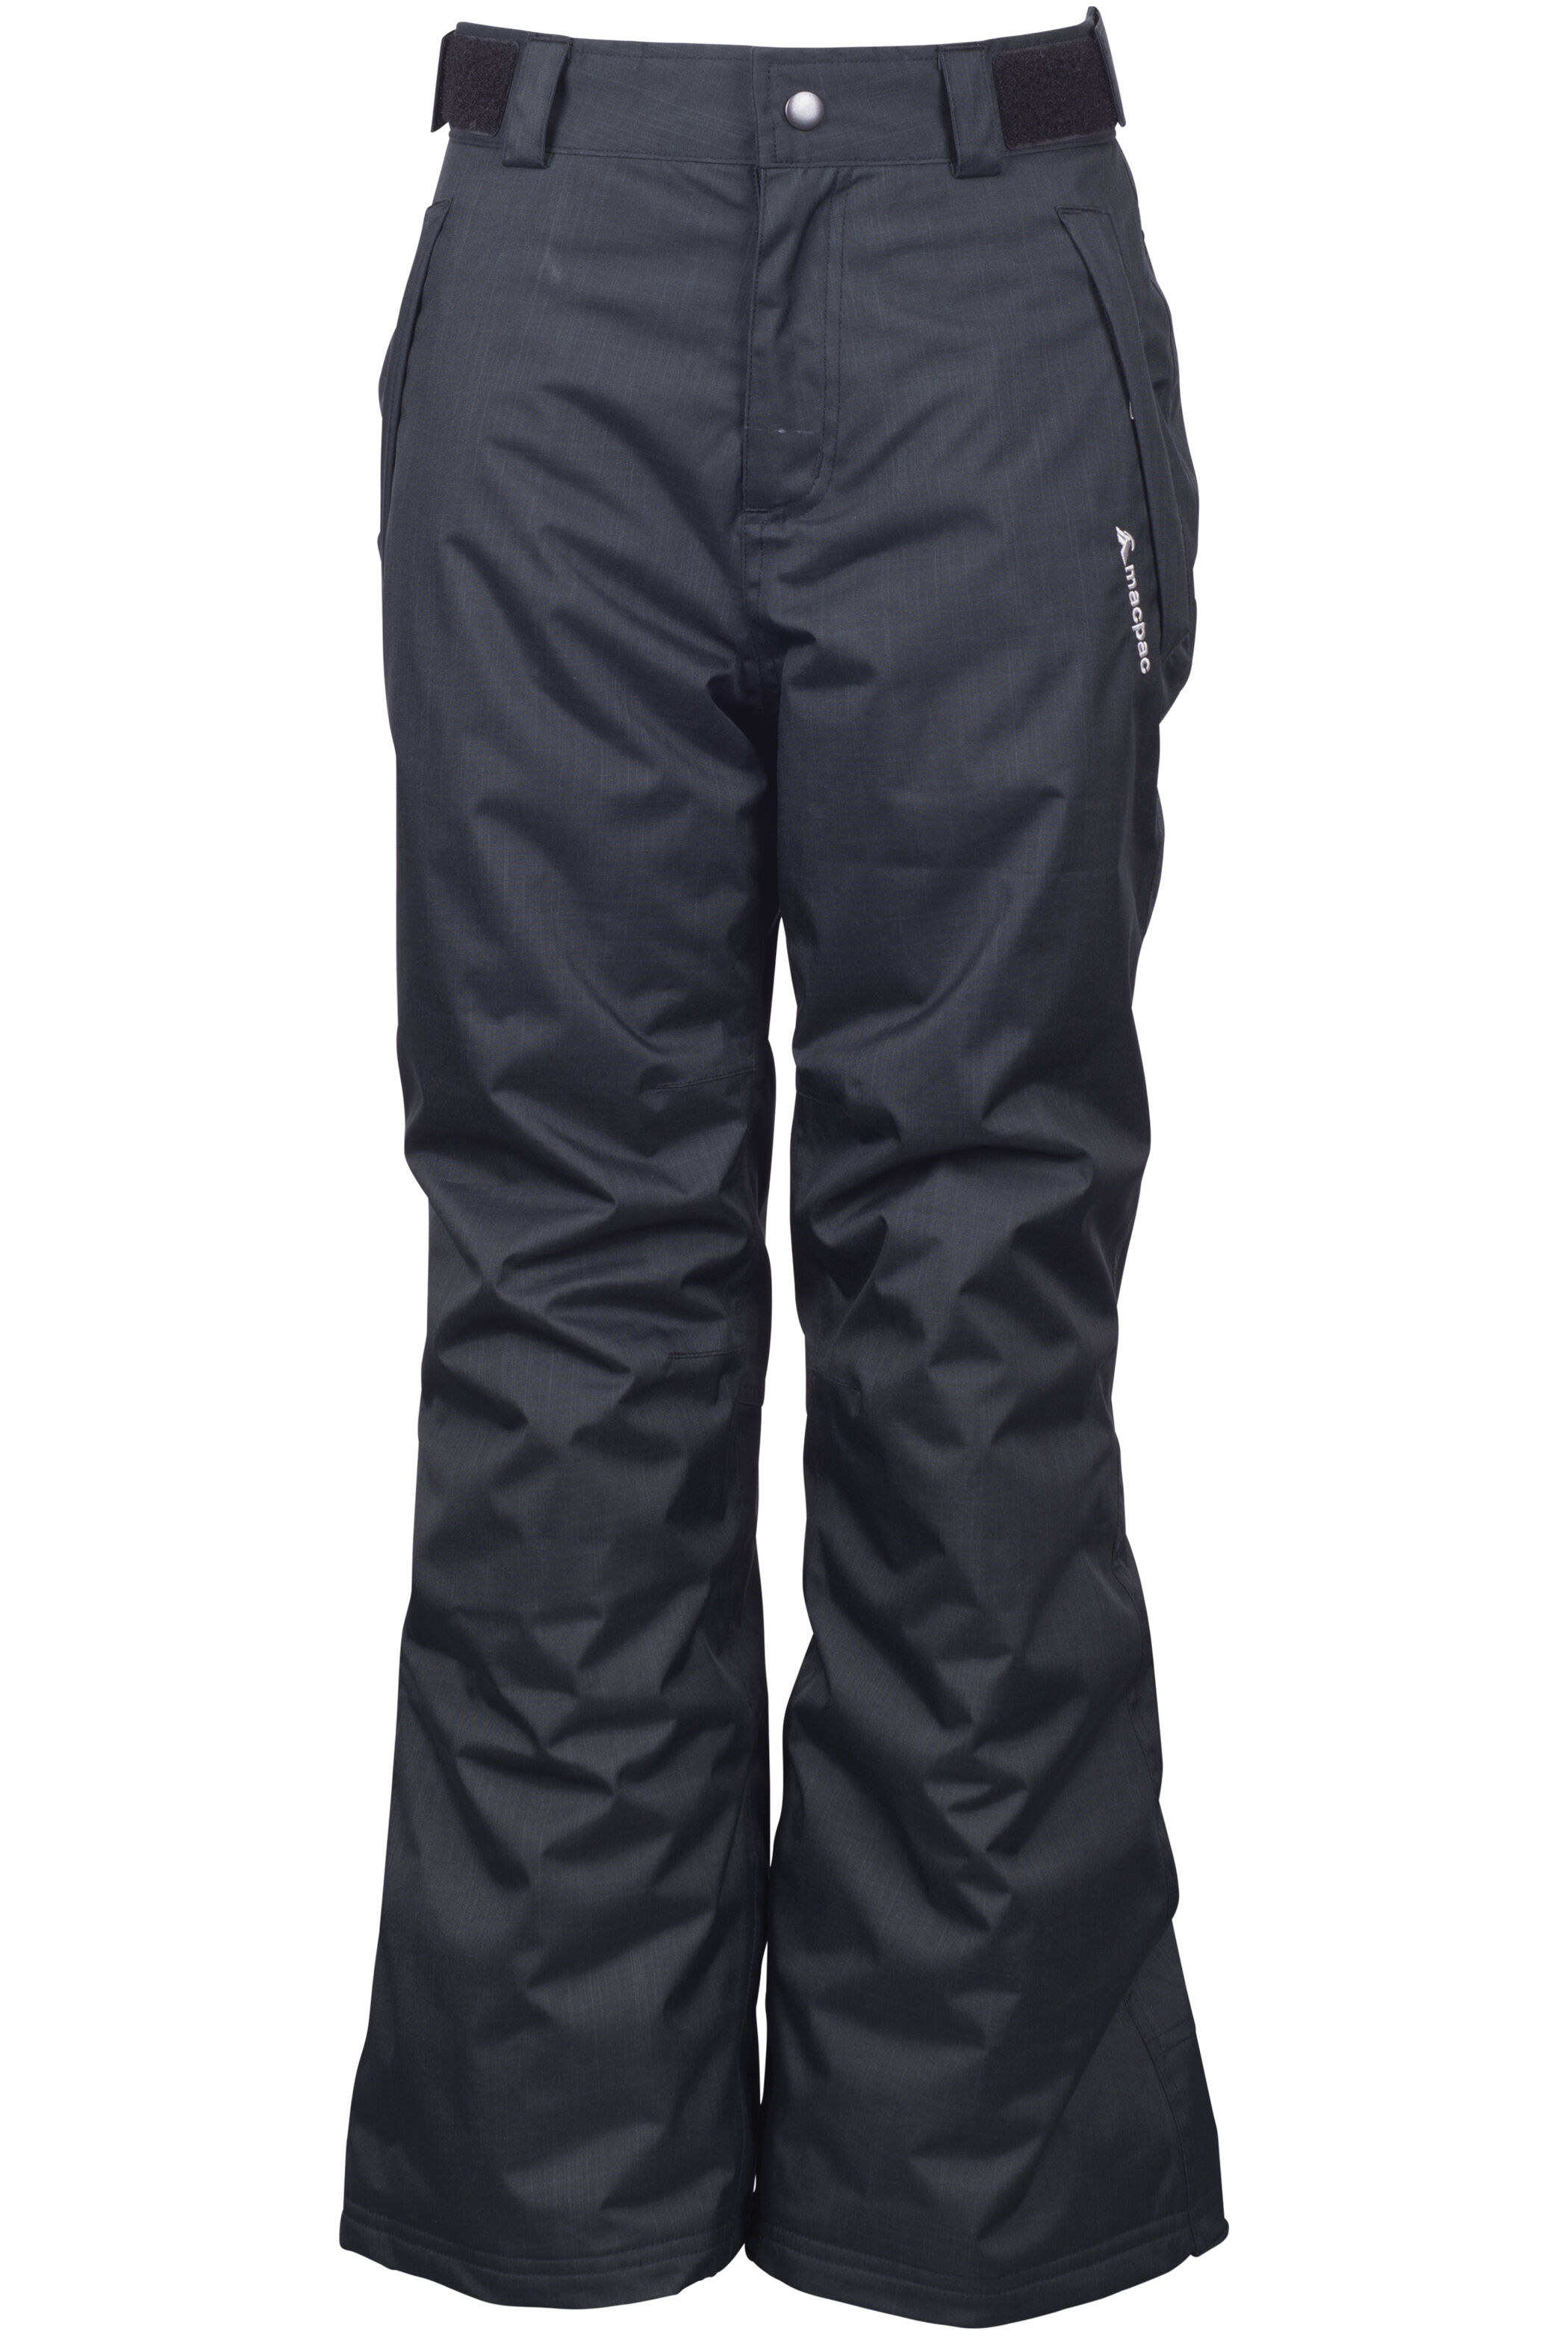 Adult Side Zip Ski Pants 2.0 REG Black: Vertical Drop Ski ShopShop:  Vertical Drop Ski Shop